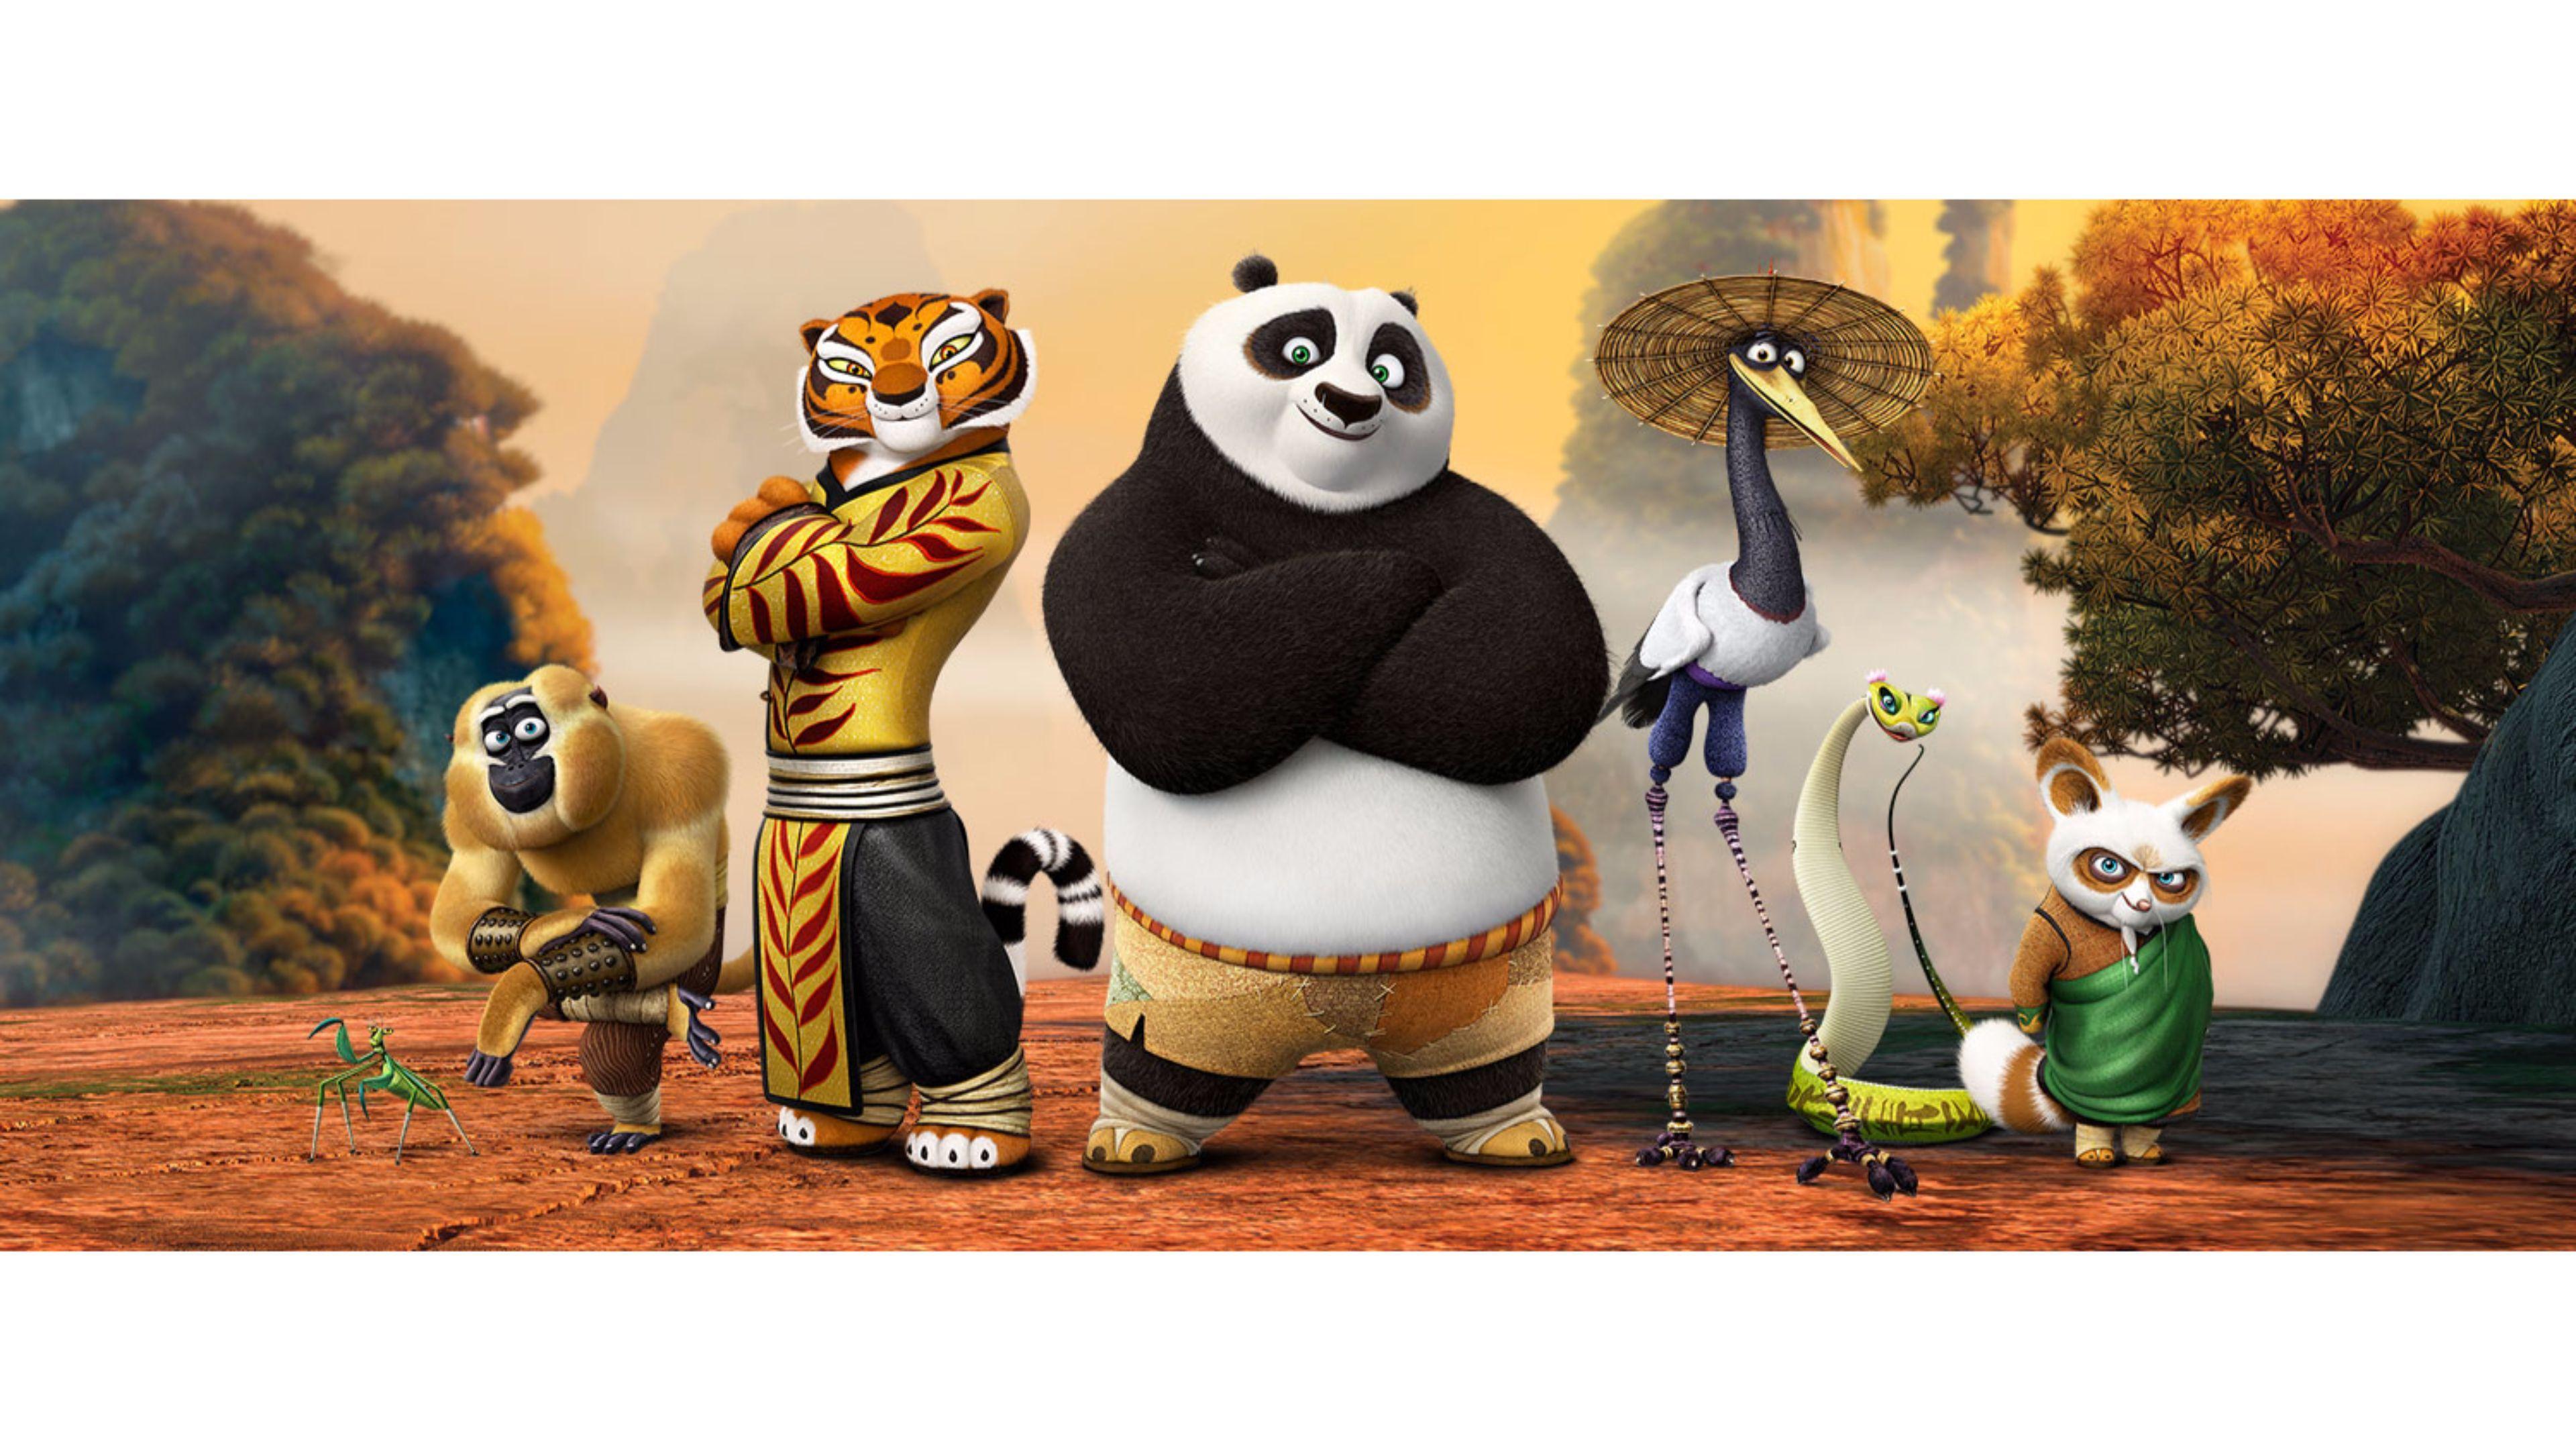 Amazing 2016 4K Kung Fu Panda Movie Wallpaper. Free 4K Wallpaper